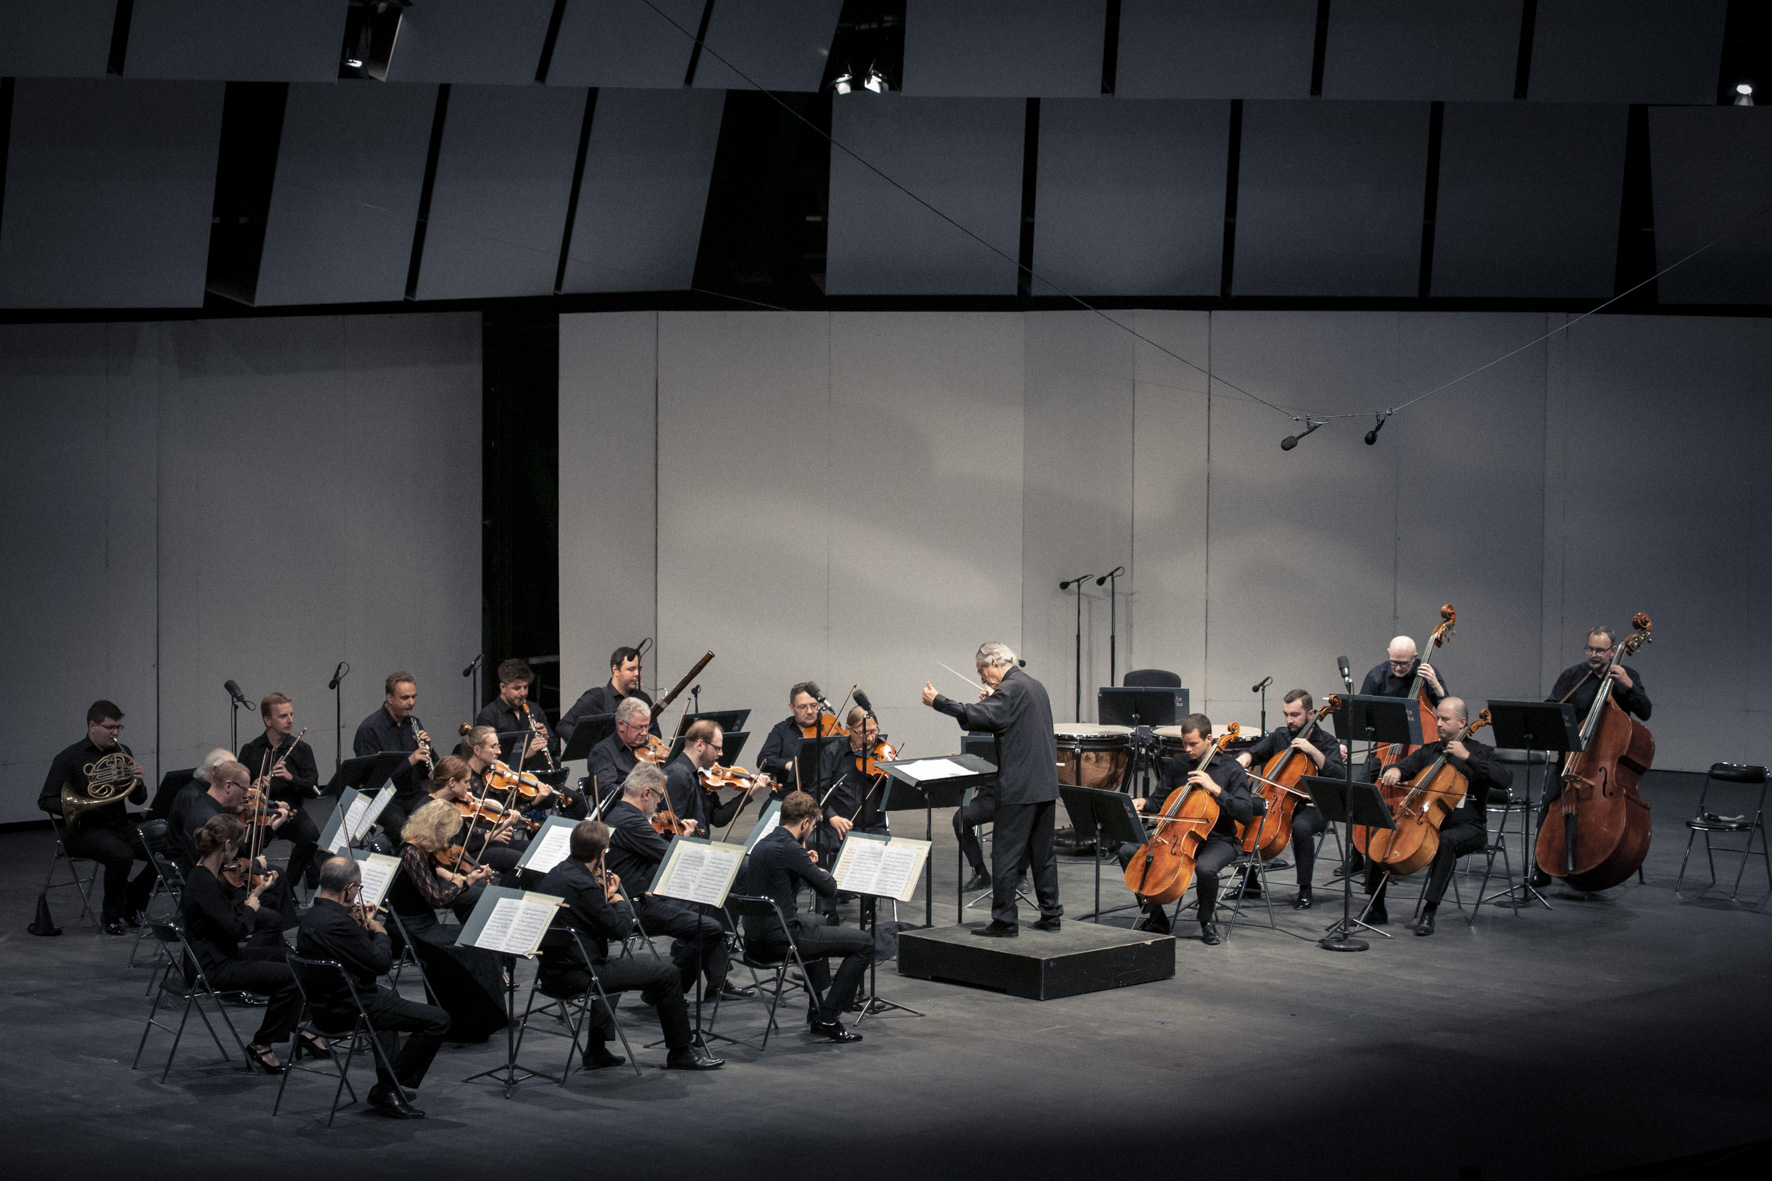 Muzycy orkiestry wraz z solista i dyrygentem grają na scenie w czasie koncertu